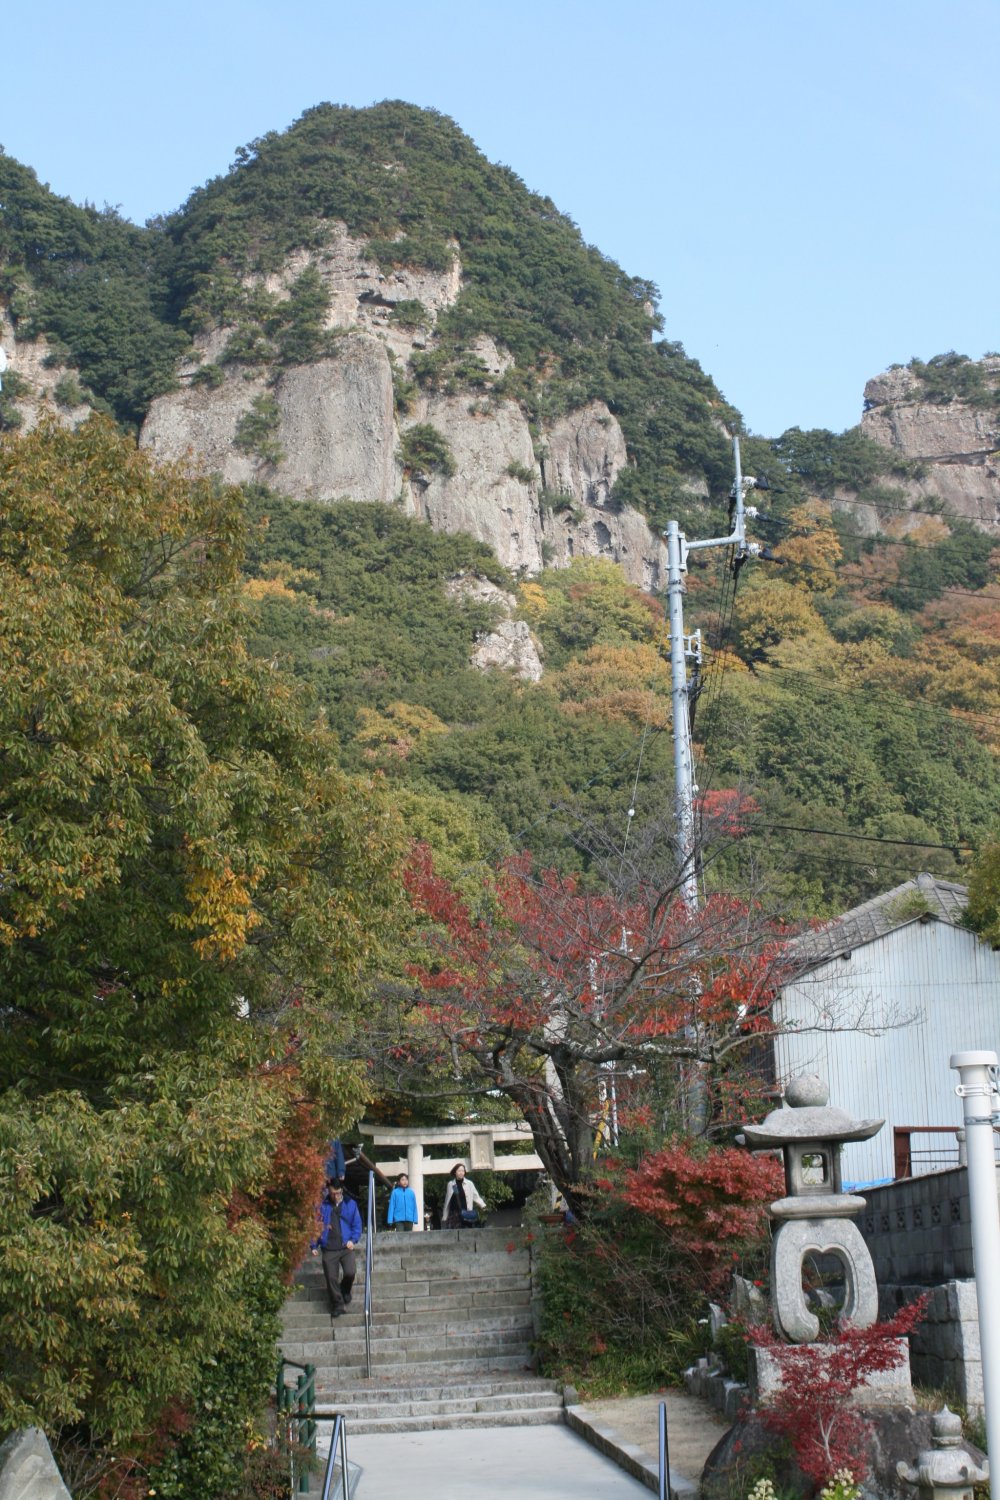 Ближайшая парковка находится в 30 минутах вниз по склону, но не необходимости идти к вершине горы, чтобы добраться до храма. К вершине есть и другие пути.